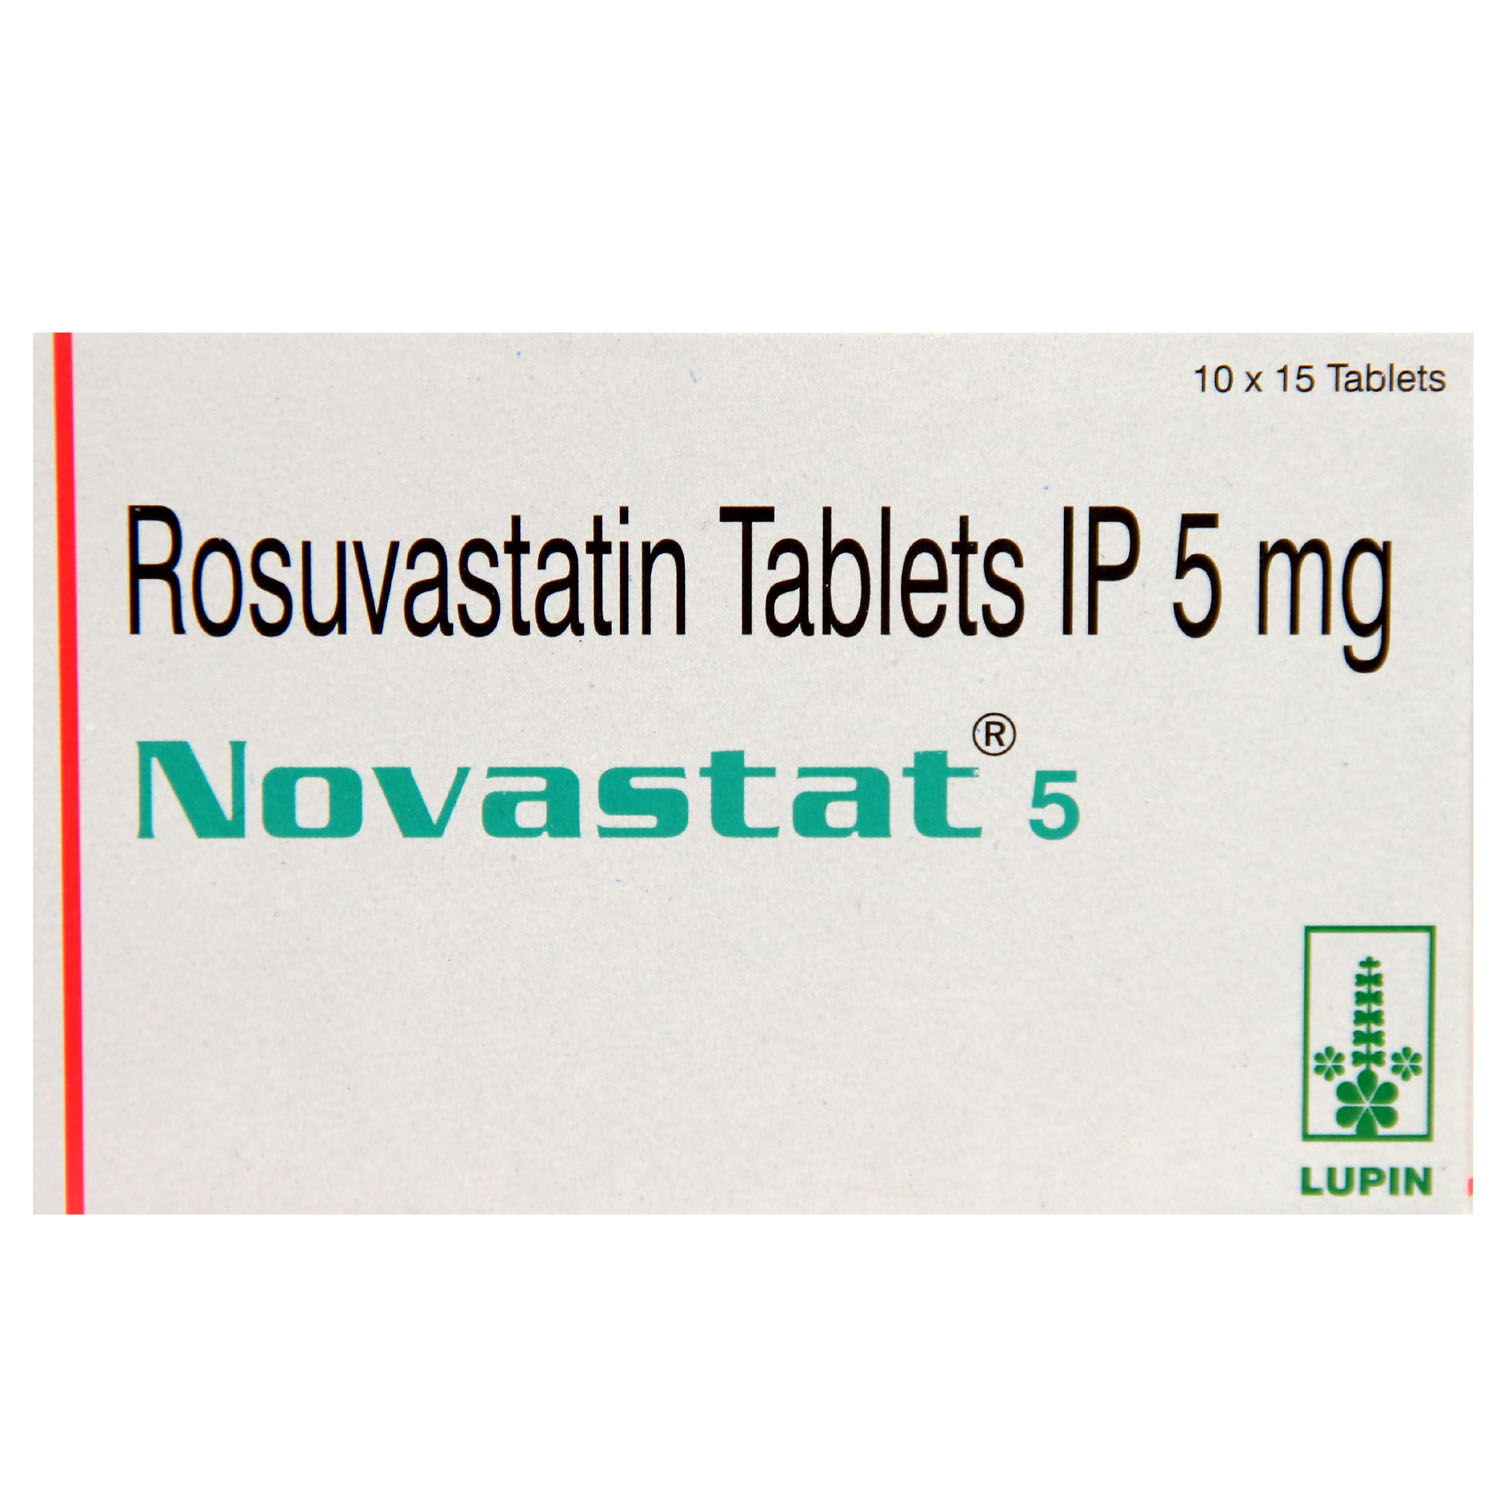 Novastat 5 Tablet 15's, Pack of 15 TABLETS